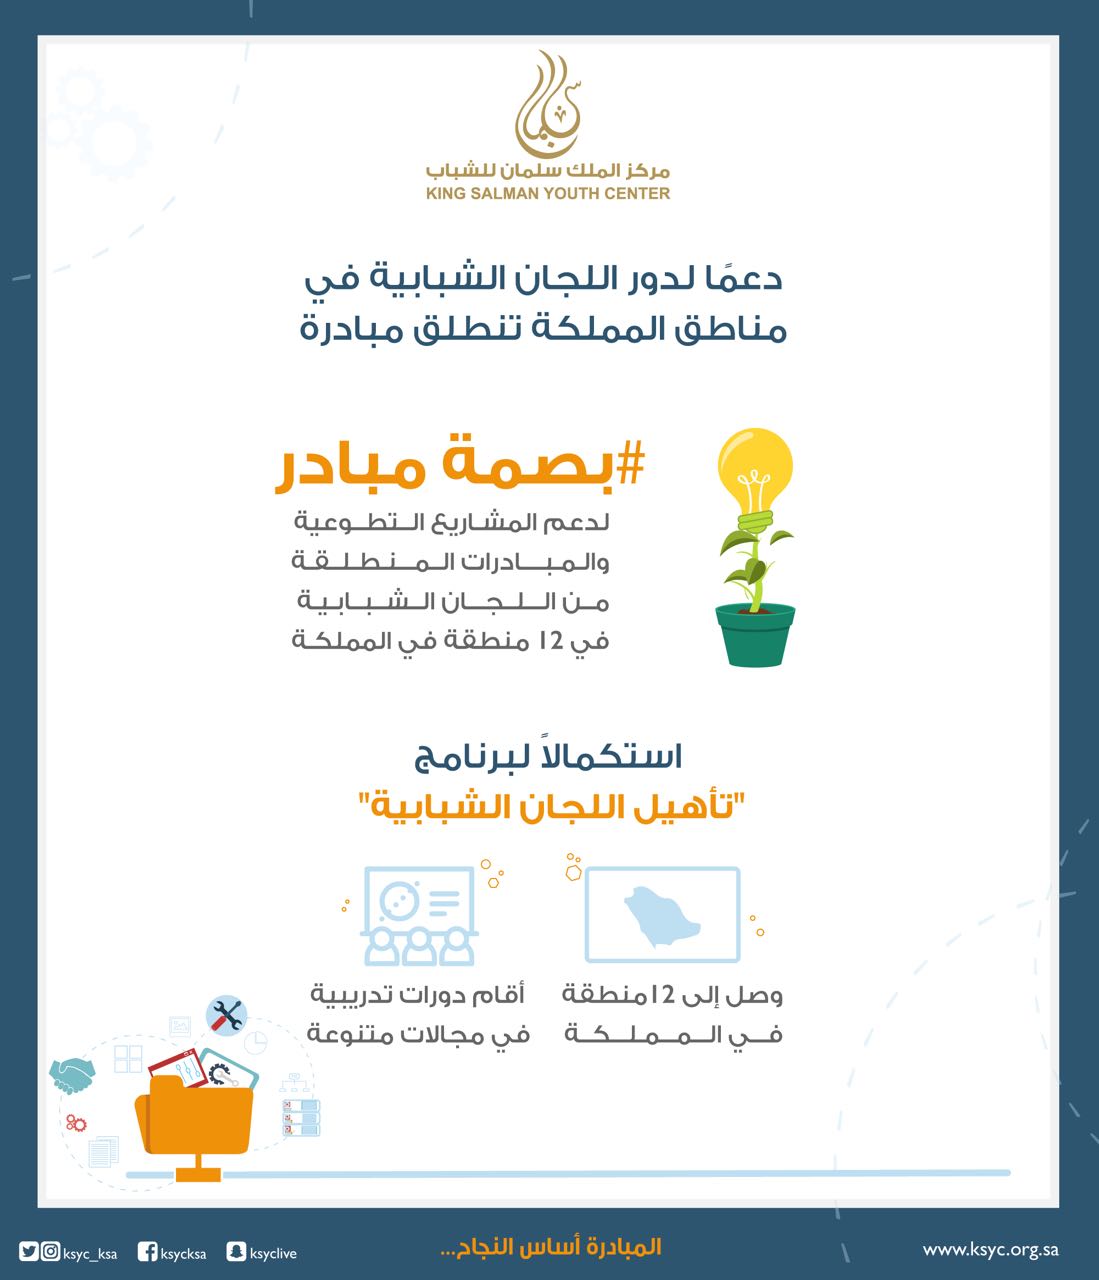 5 مبادرات شبابية خلّاقة تفوز بدعم من مركز الملك سلمان للشباب